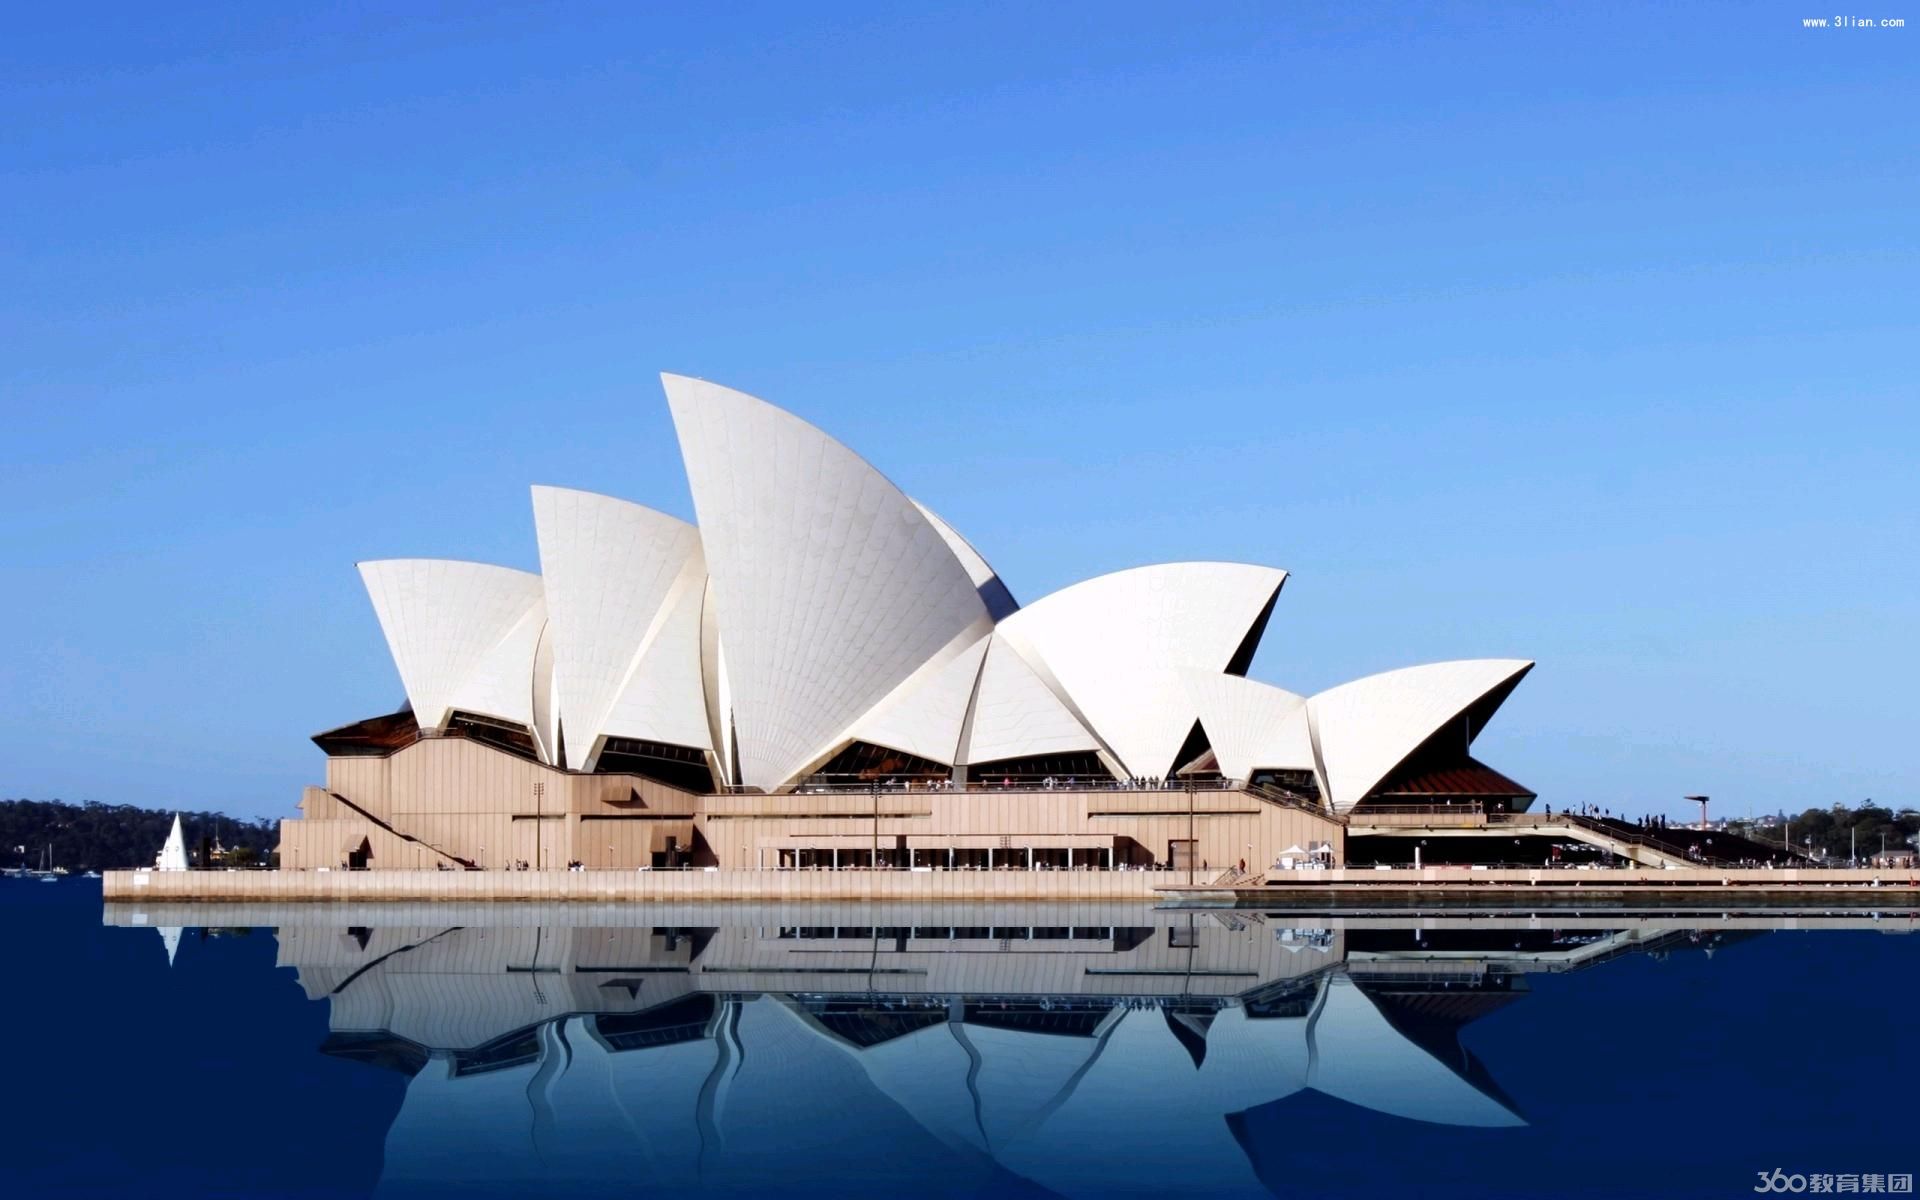 留学澳洲:毕业后继续留澳学习的好处 - 留学须